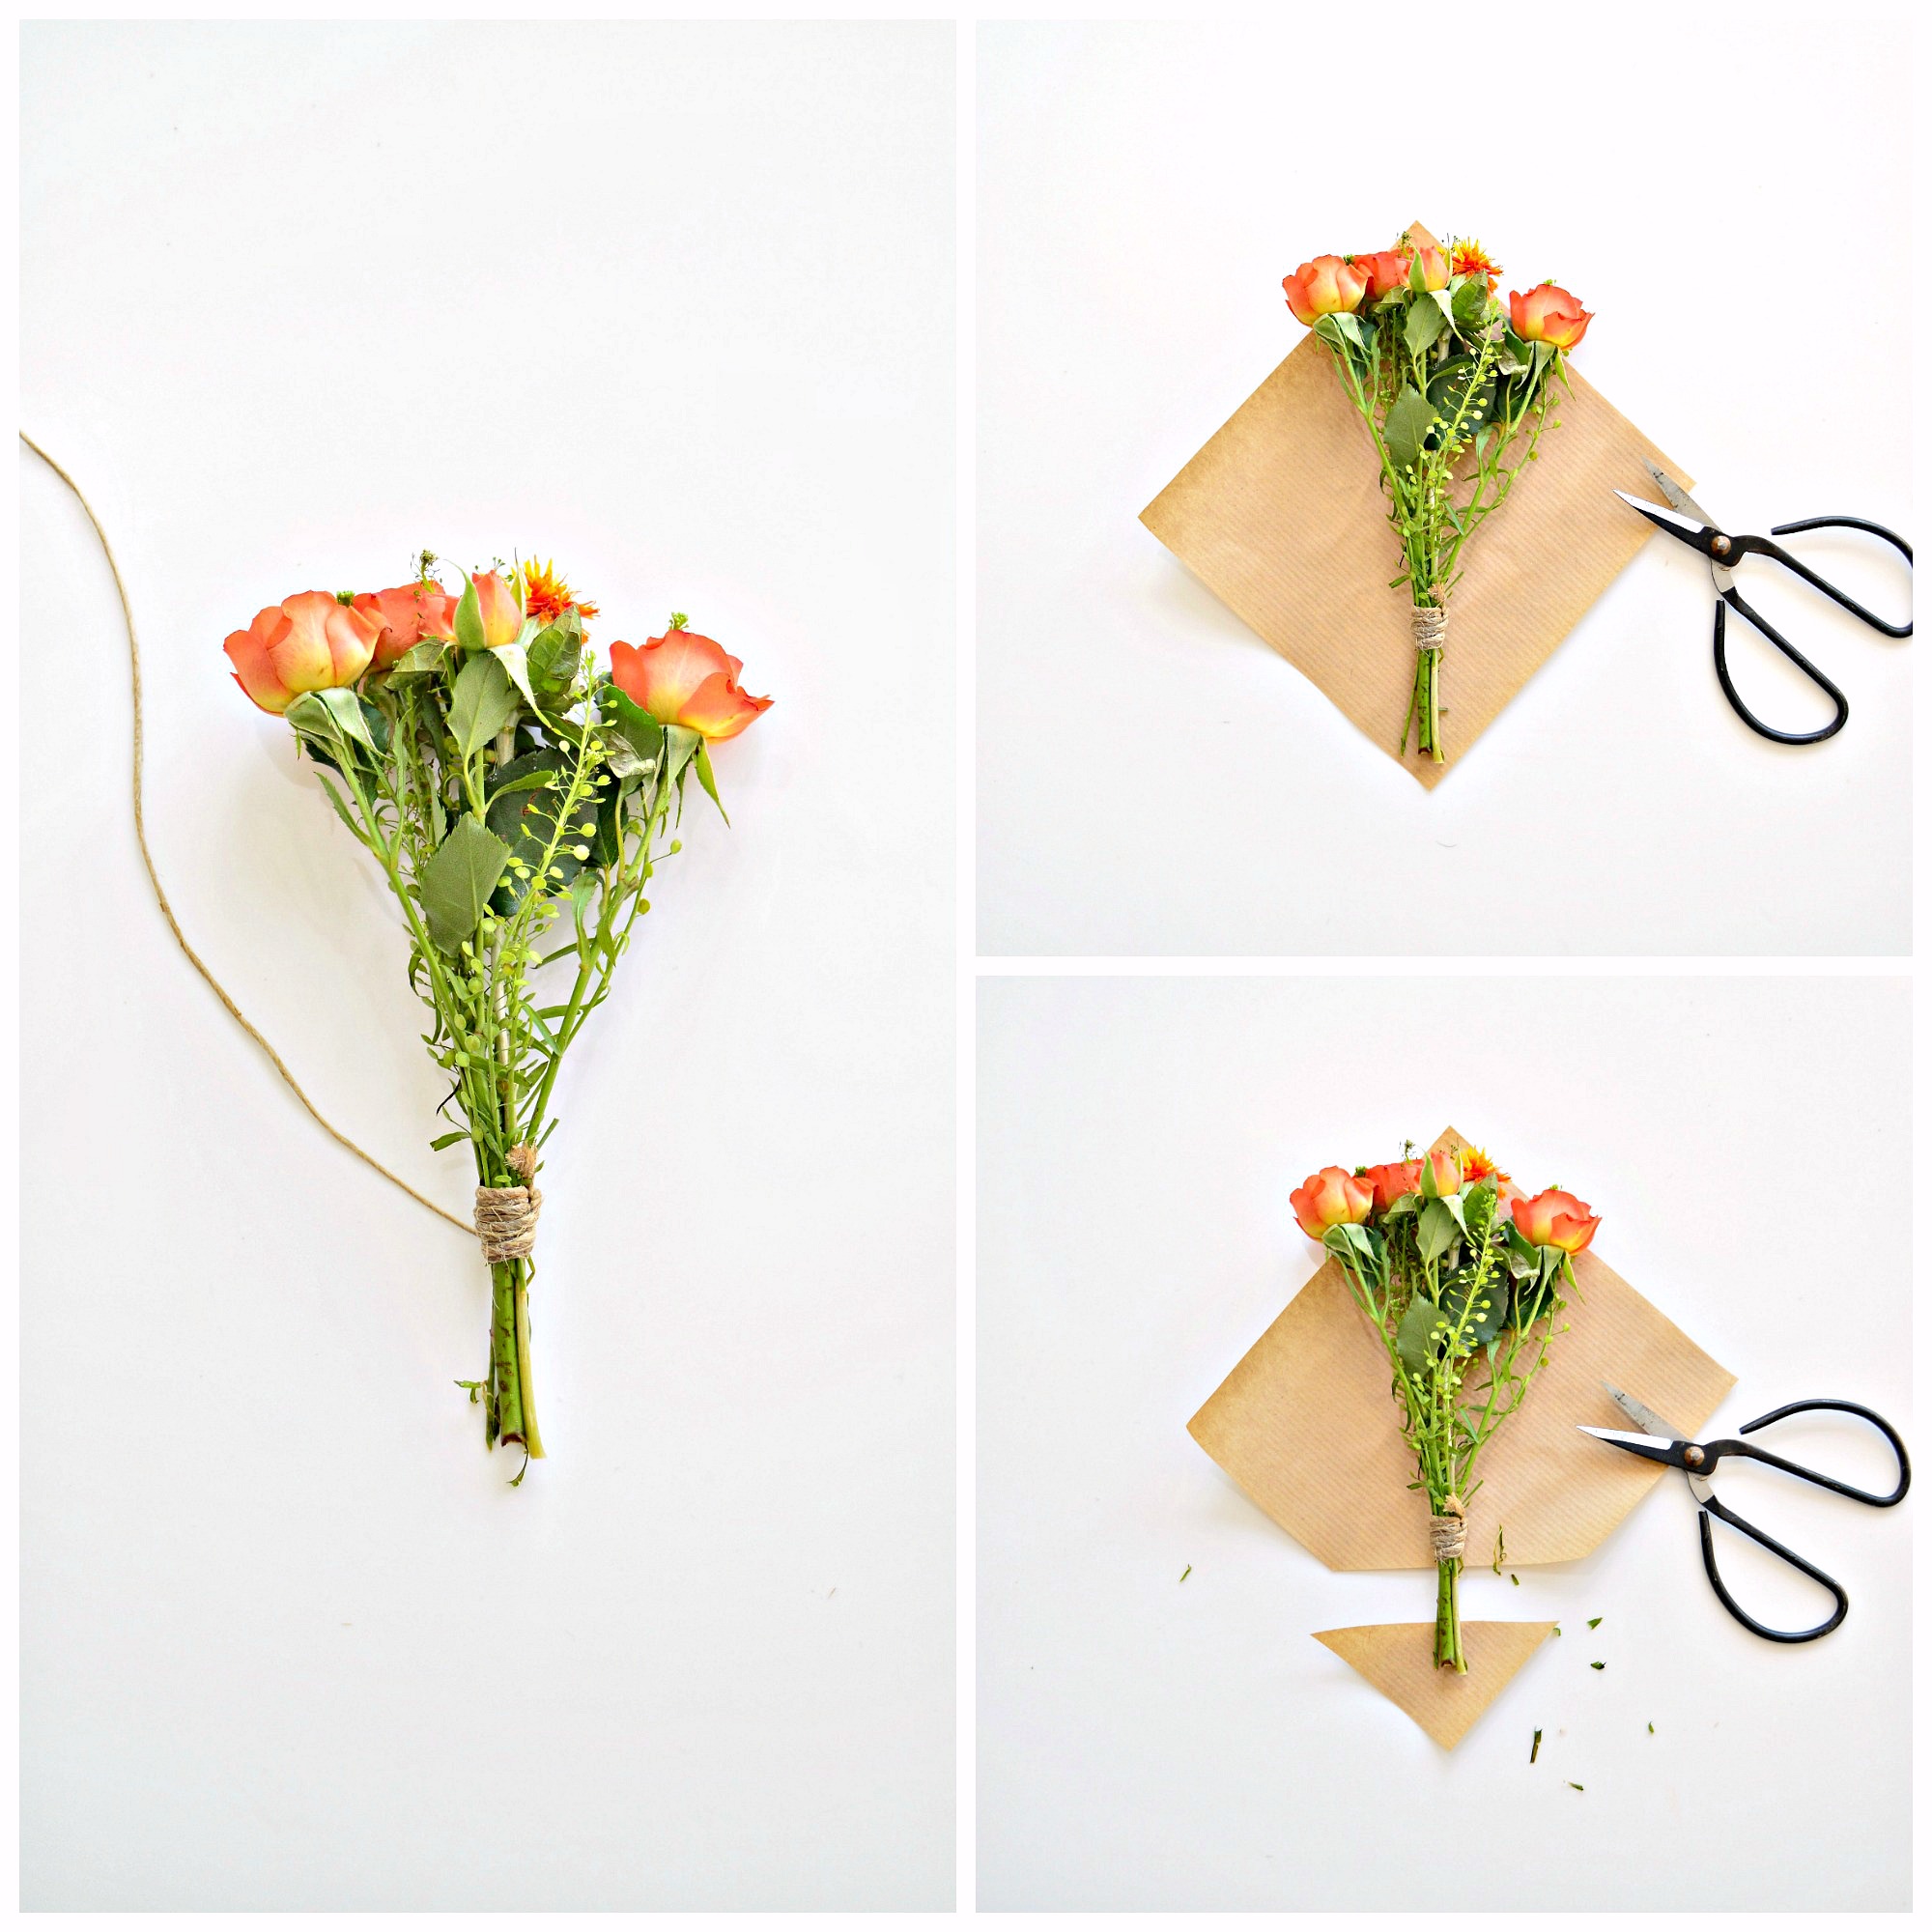 Как упаковать цветы в пленку в домашних условиях пошагово фото